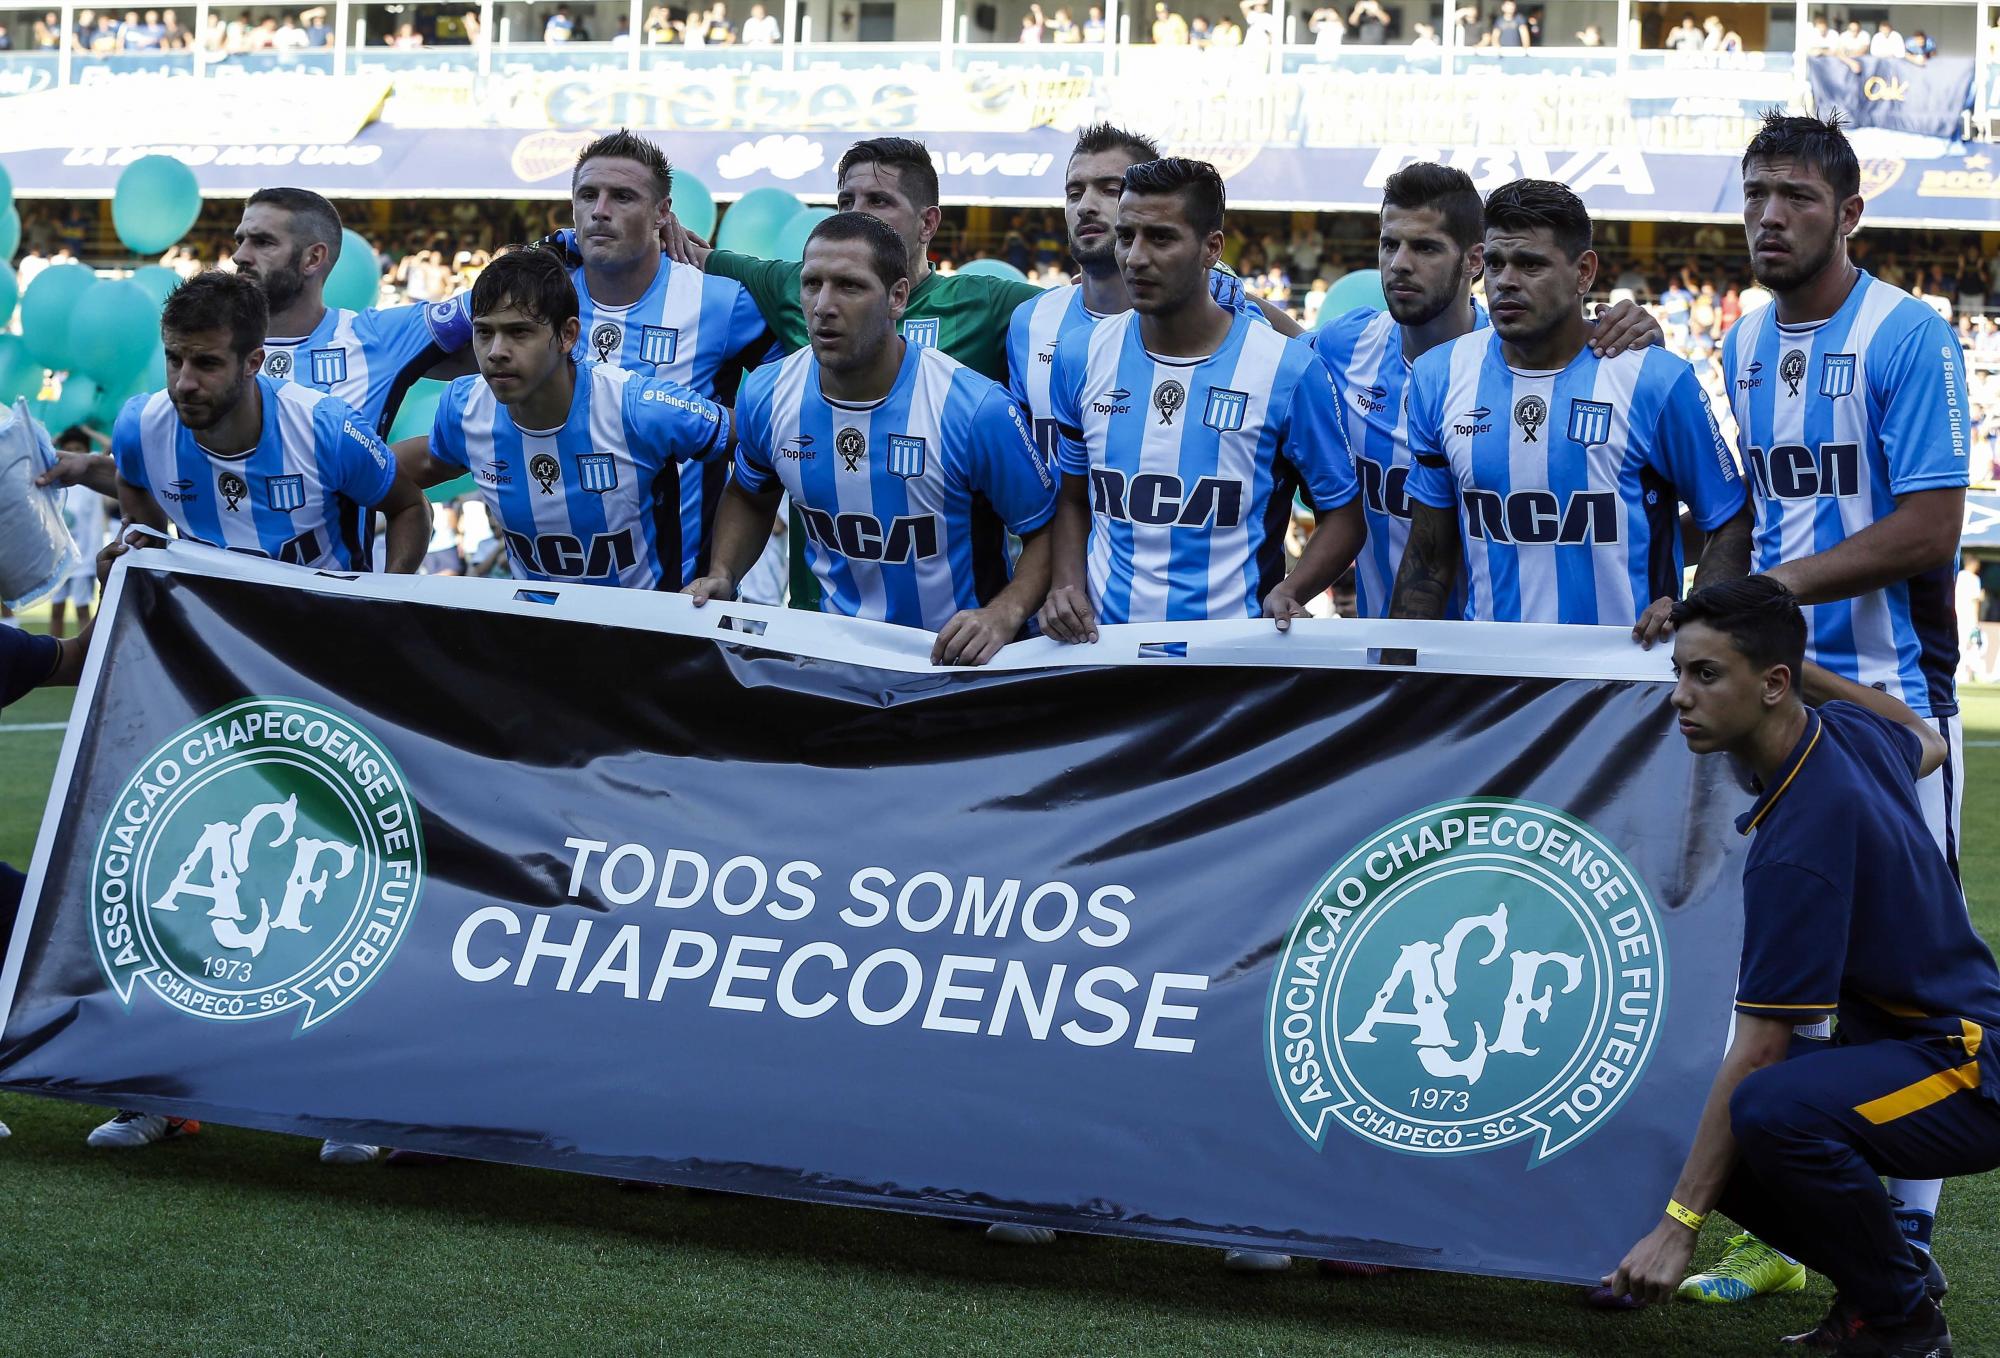 Jugadores del Racing Club, de la liga de Argentina, posan con una letrero que recuerda al Chapecoense, antes del encuentro liguero contra el Boca Juniors. 